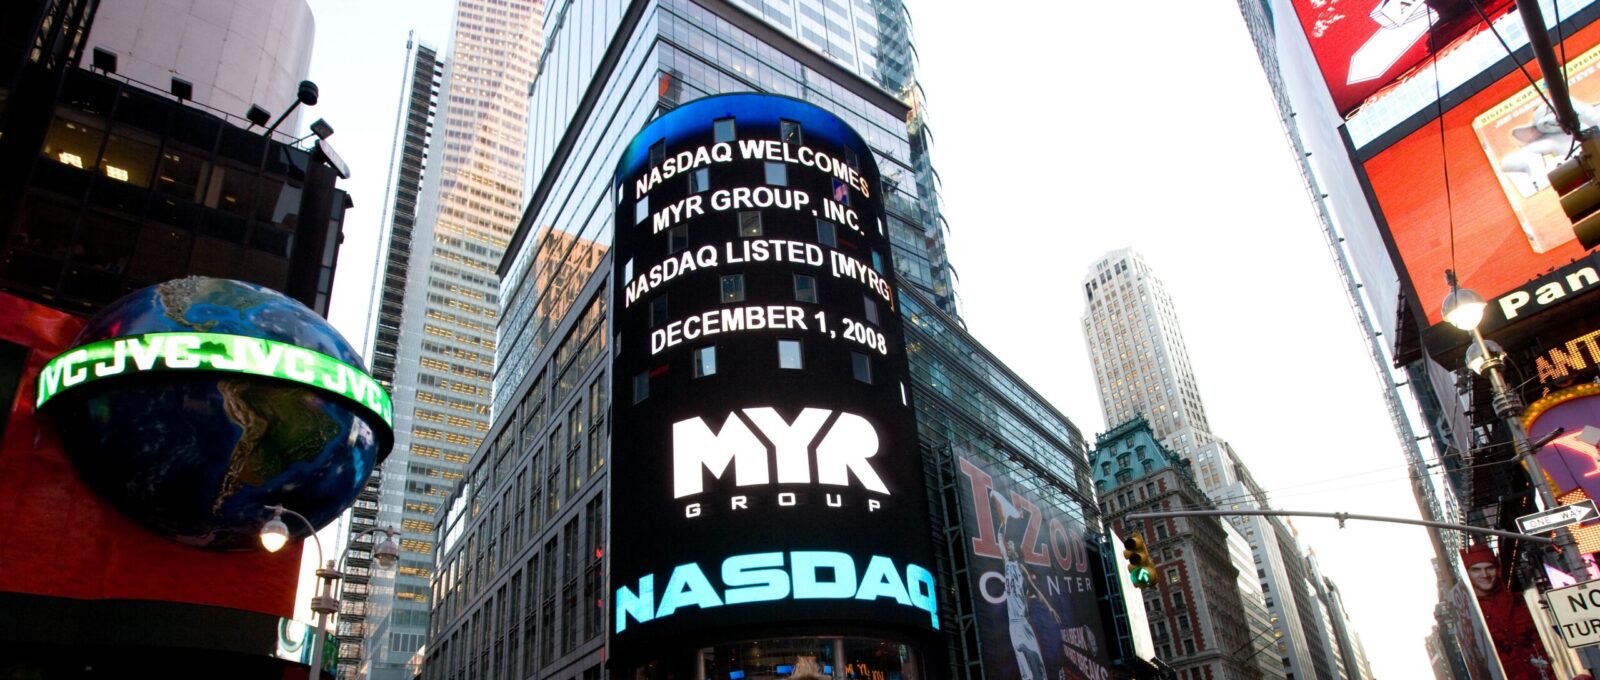 Digital billboard of the MYR Group logo